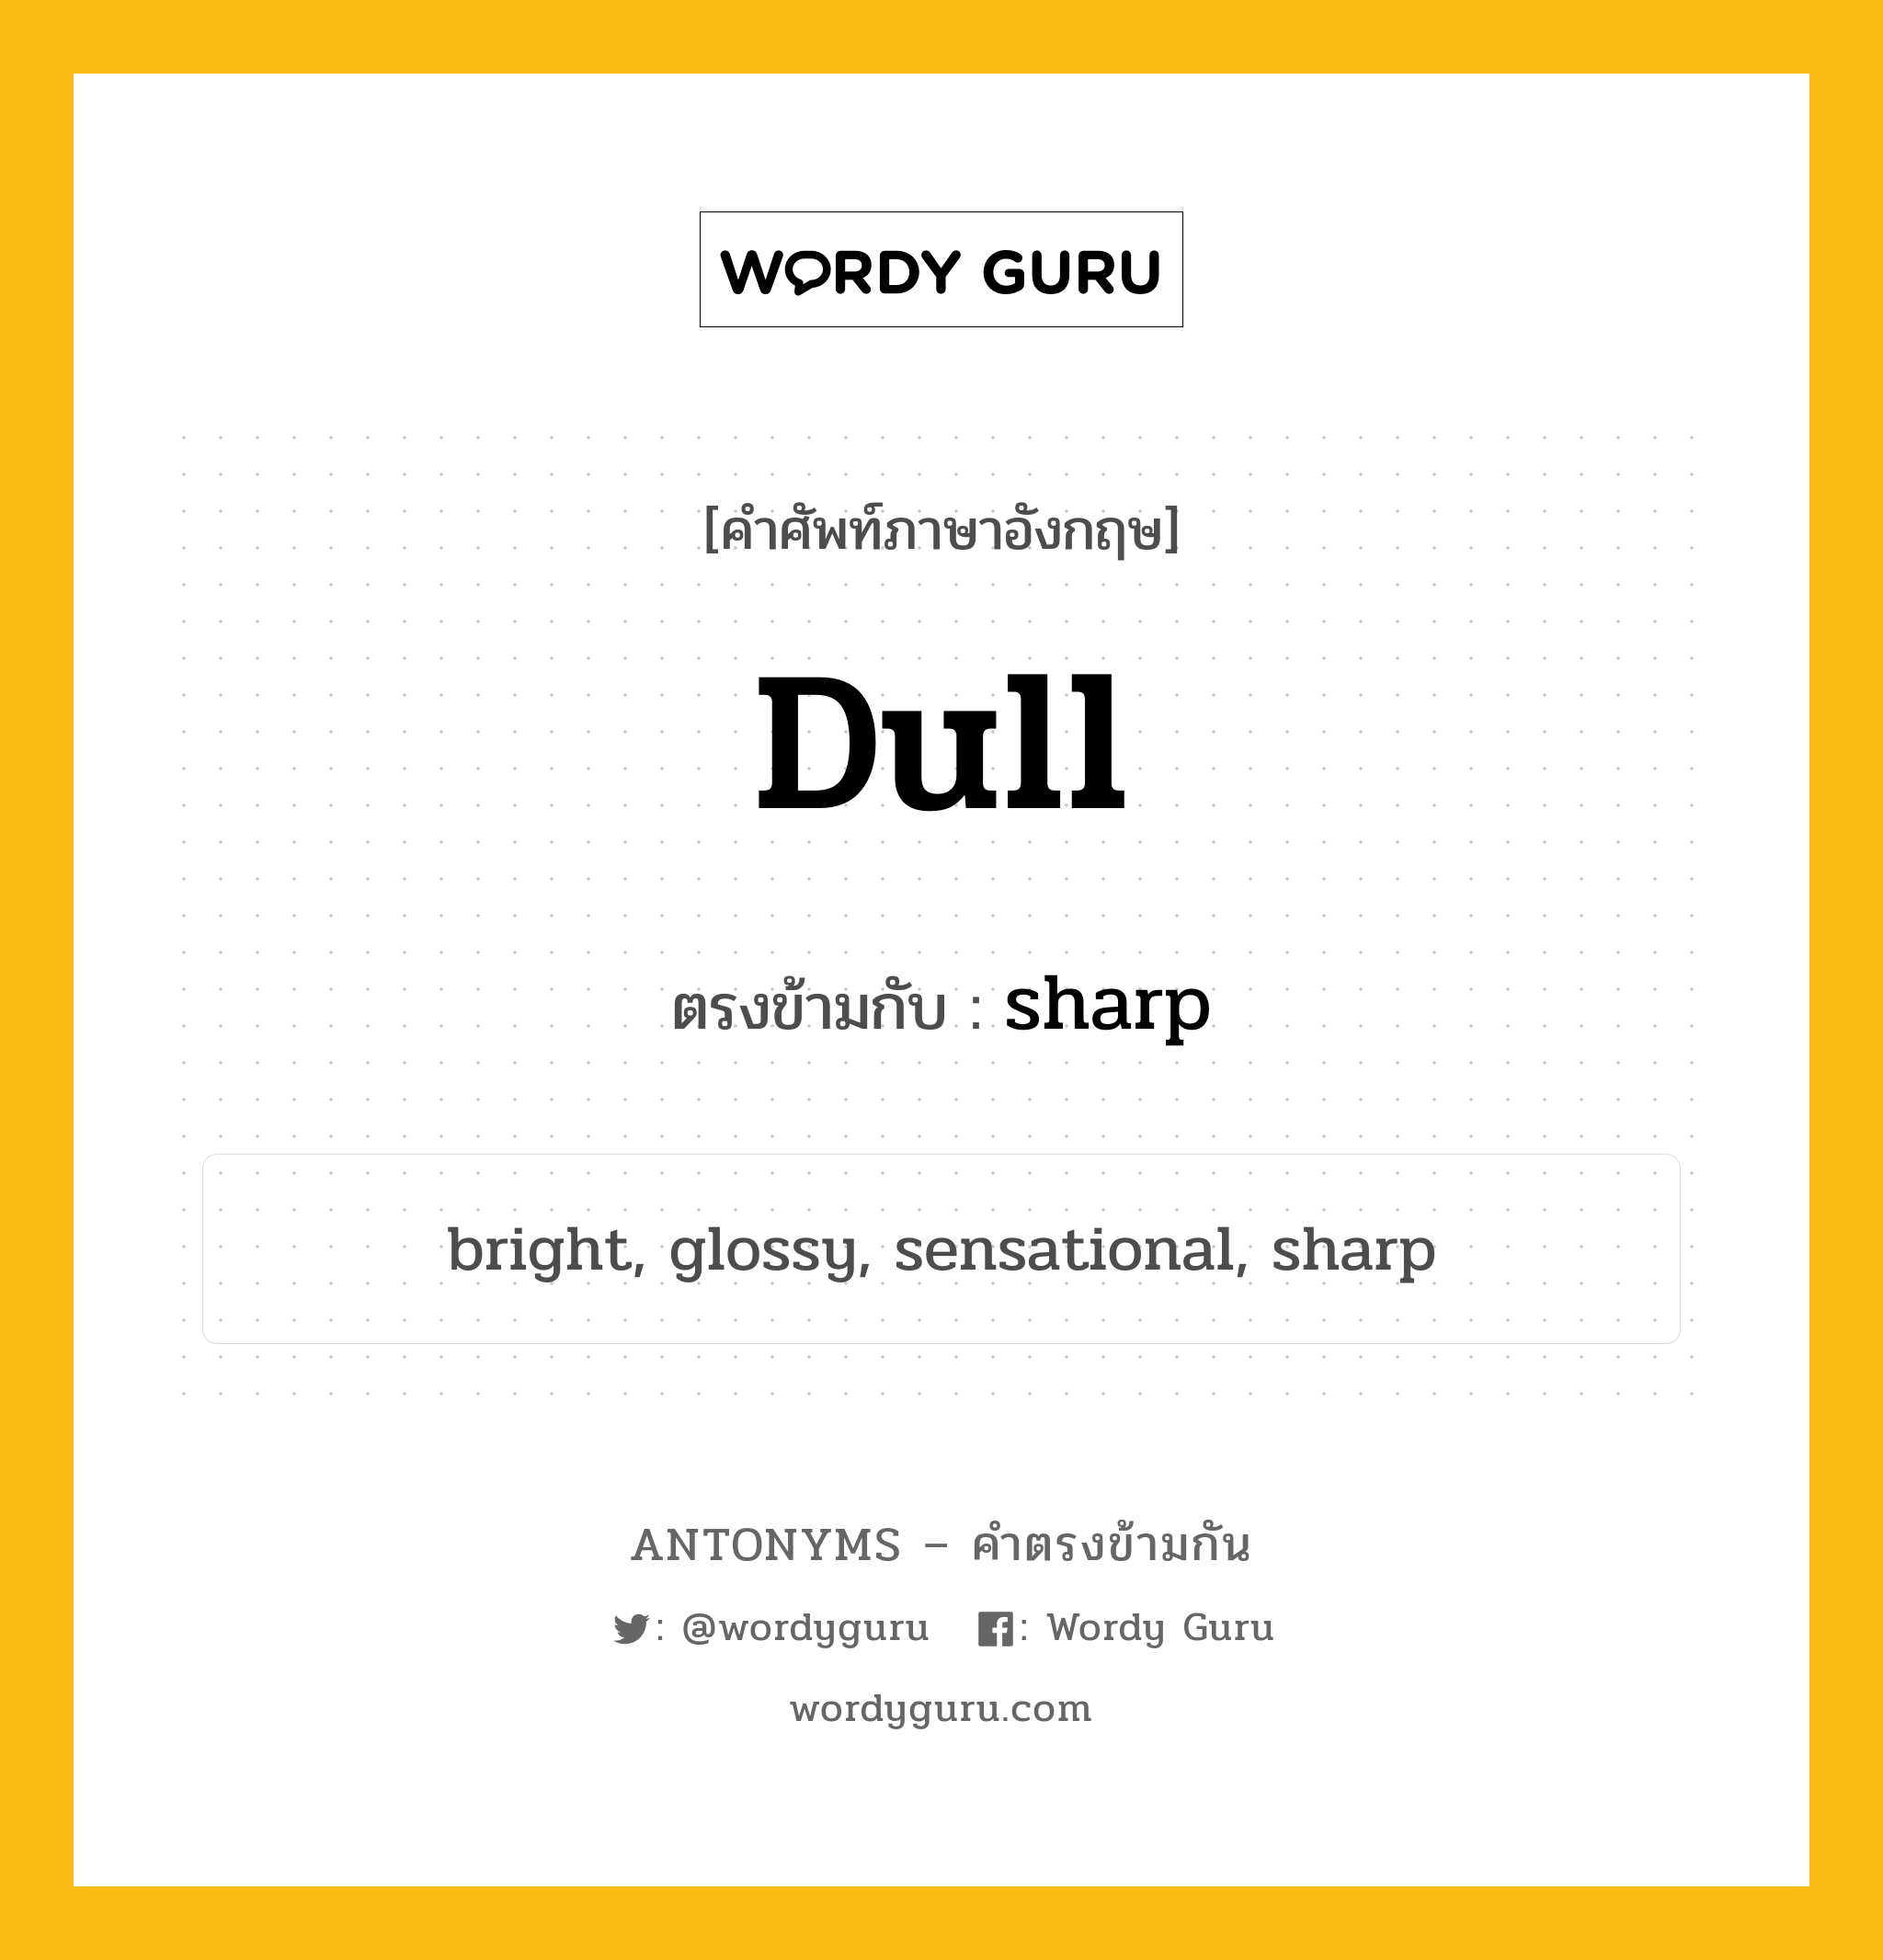 dull เป็นคำตรงข้ามกับคำไหนบ้าง?, คำศัพท์ภาษาอังกฤษที่มีความหมายตรงข้ามกัน dull ตรงข้ามกับ sharp หมวด sharp